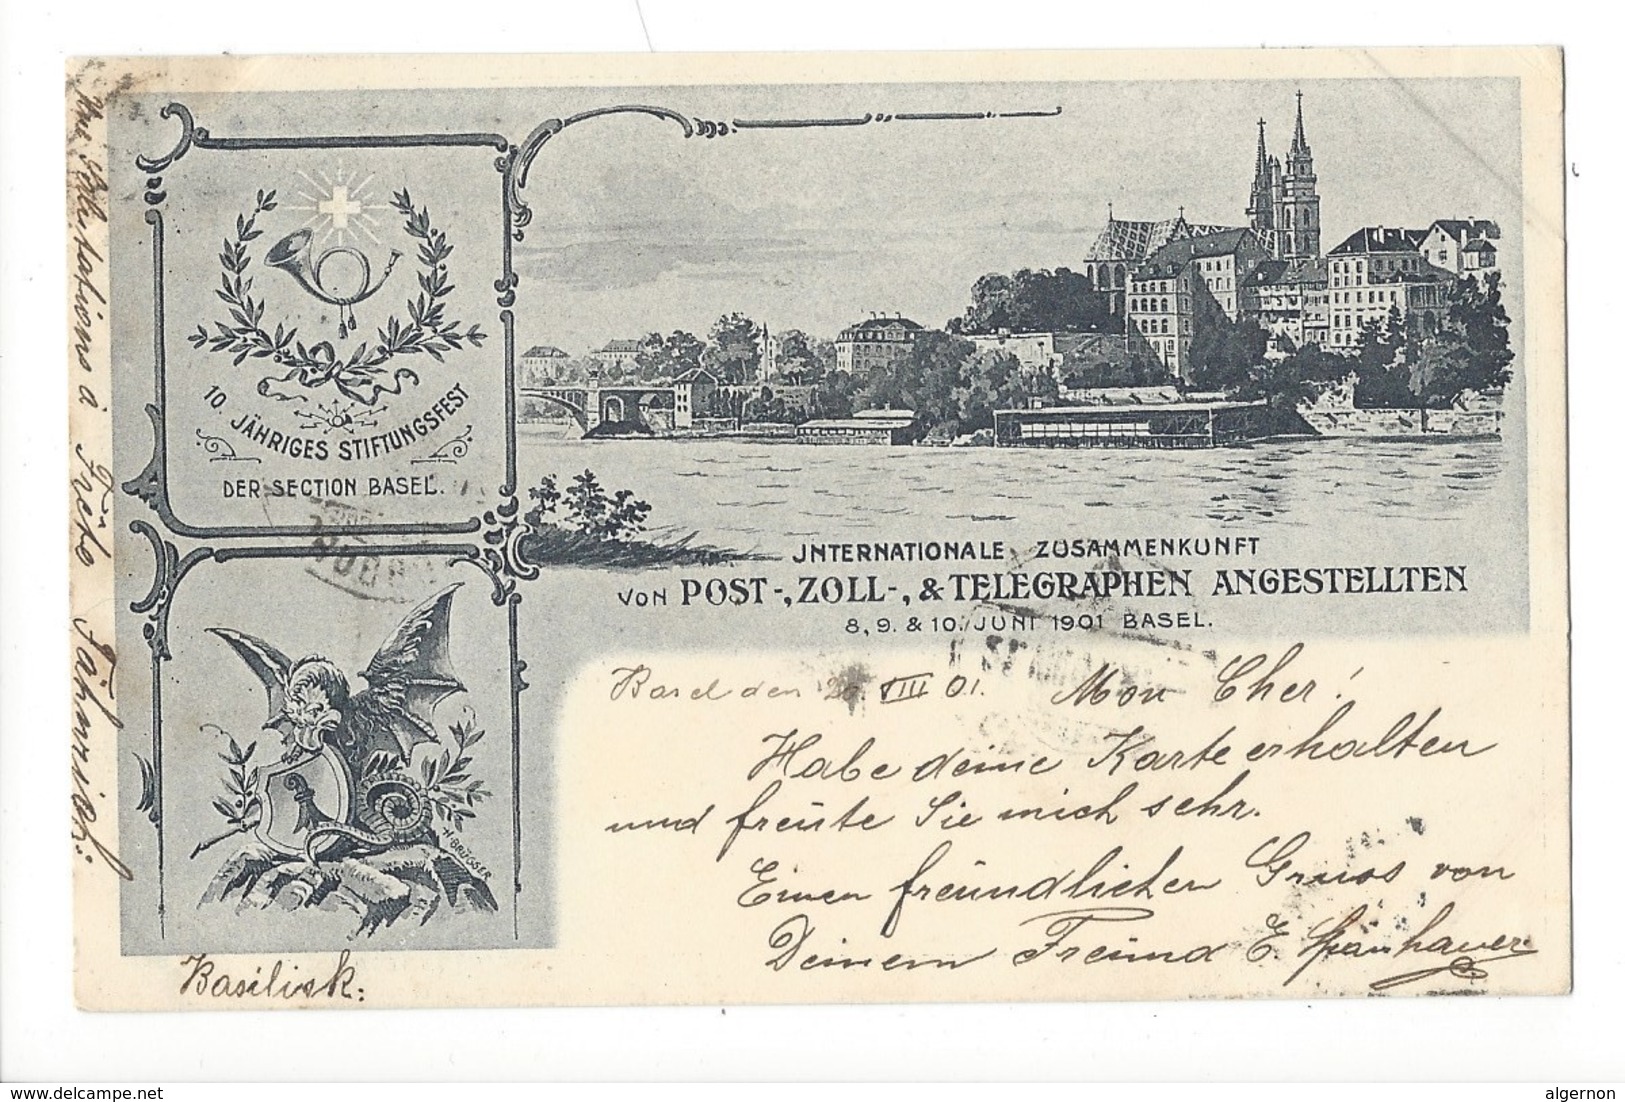 16252 - Basel Internationale Zusammenkunft Von Post, Zoll Telegraphen Angestellten Juni 1901 - Couples